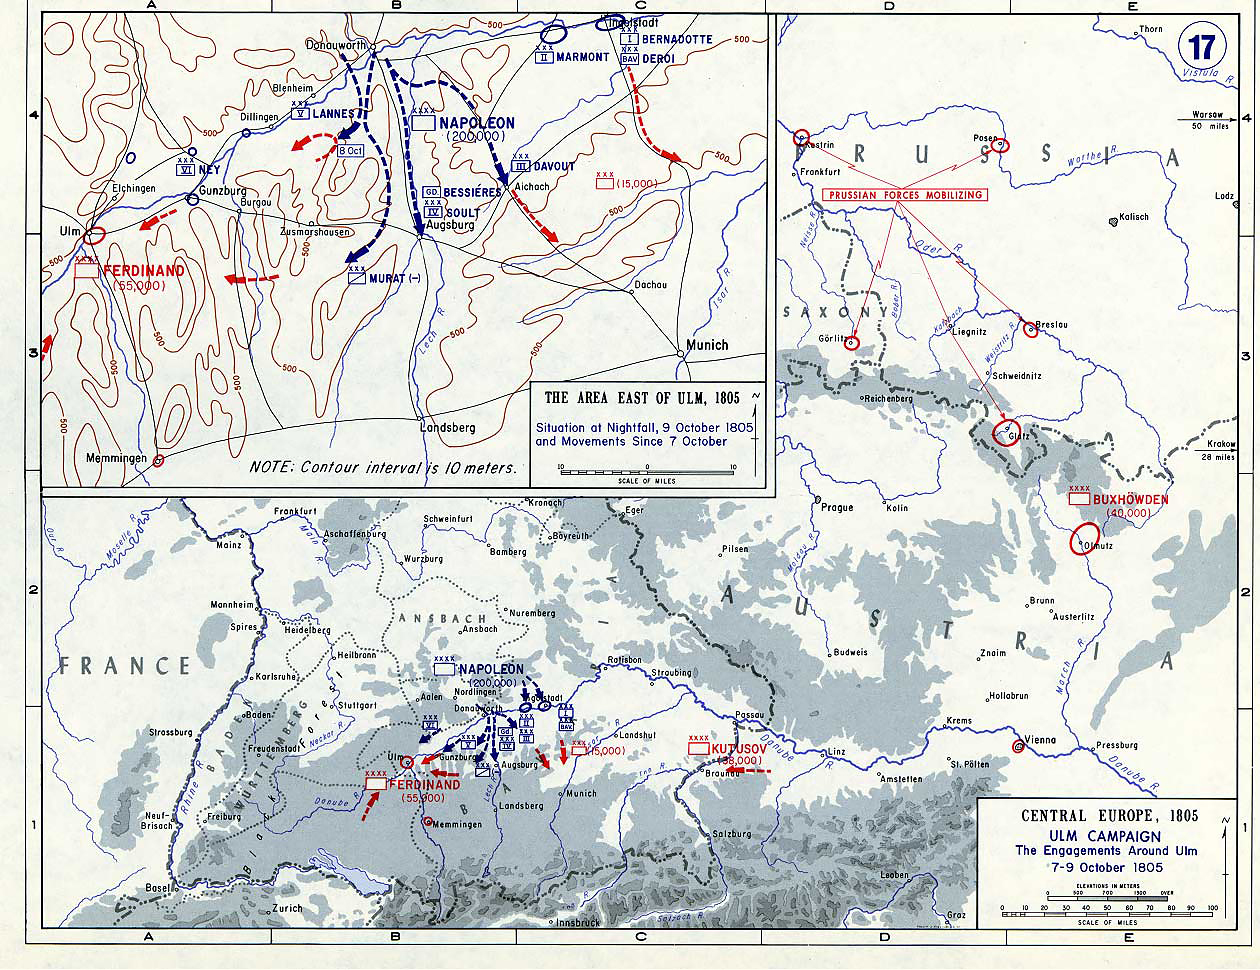 Ульмская кампания - бои вокруг Ульма, 7-9 октября 1805 г., карта